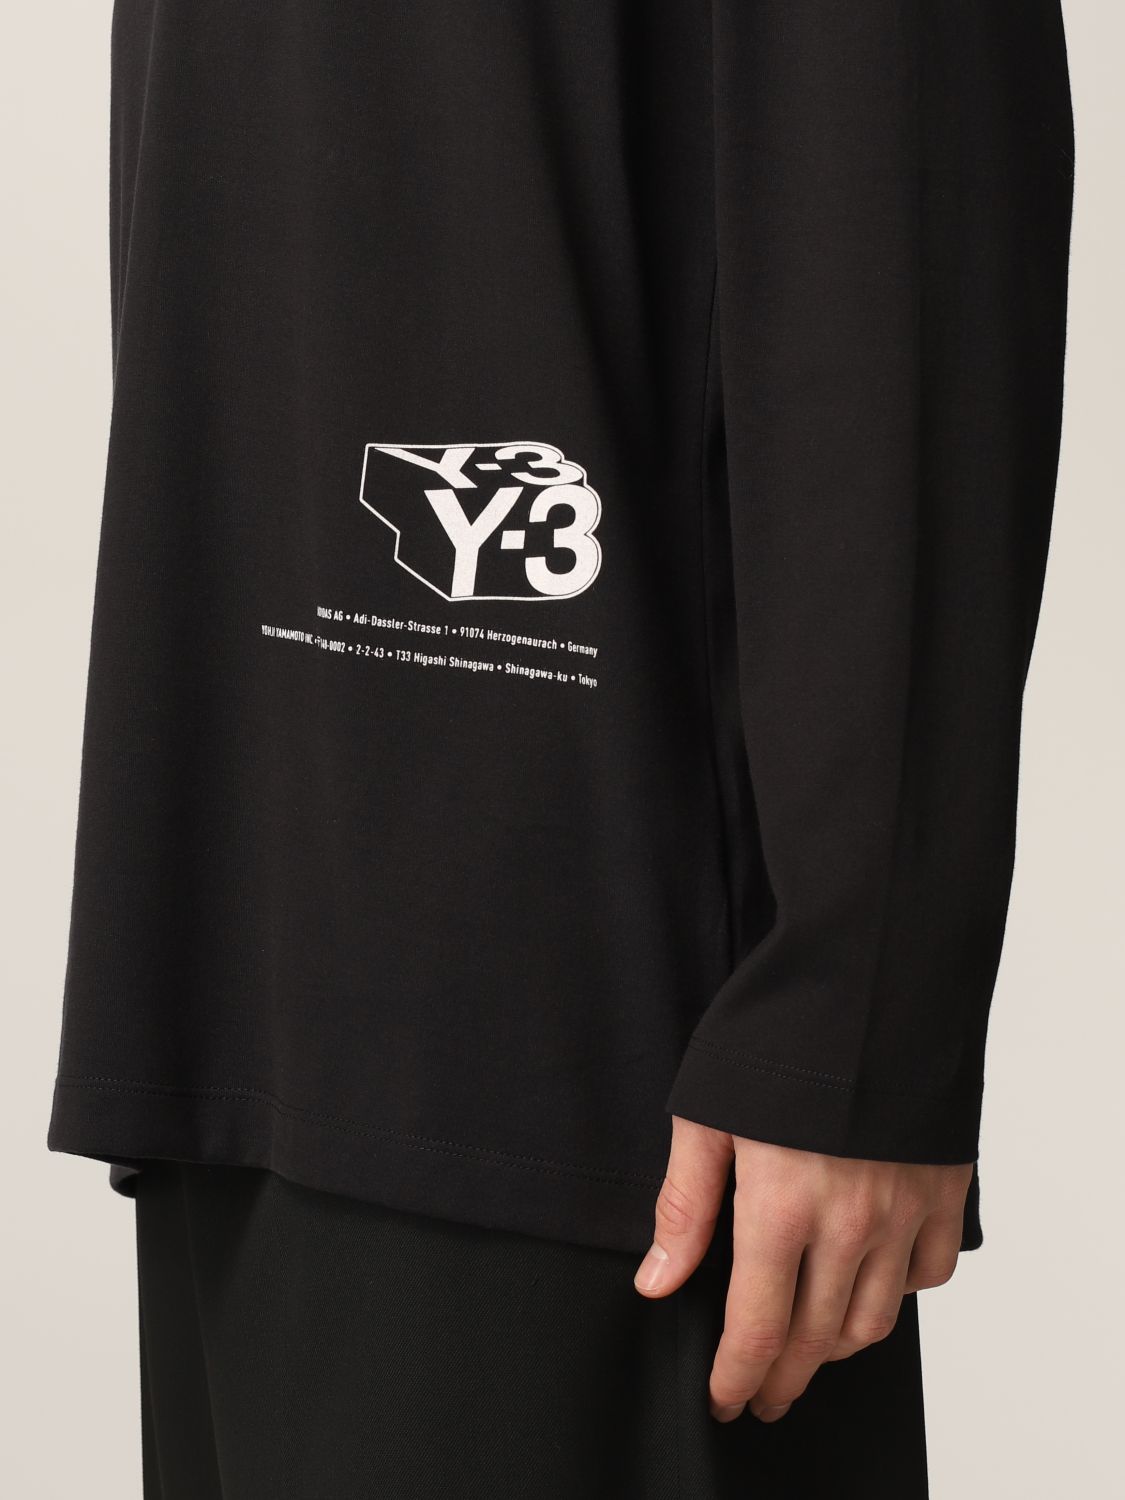 gavnlig Uhøfligt Vejfremstillingsproces Y-3: T-shirt men | T-Shirt Y-3 Men Black | T-Shirt Y-3 HF7071 GIGLIO.COM